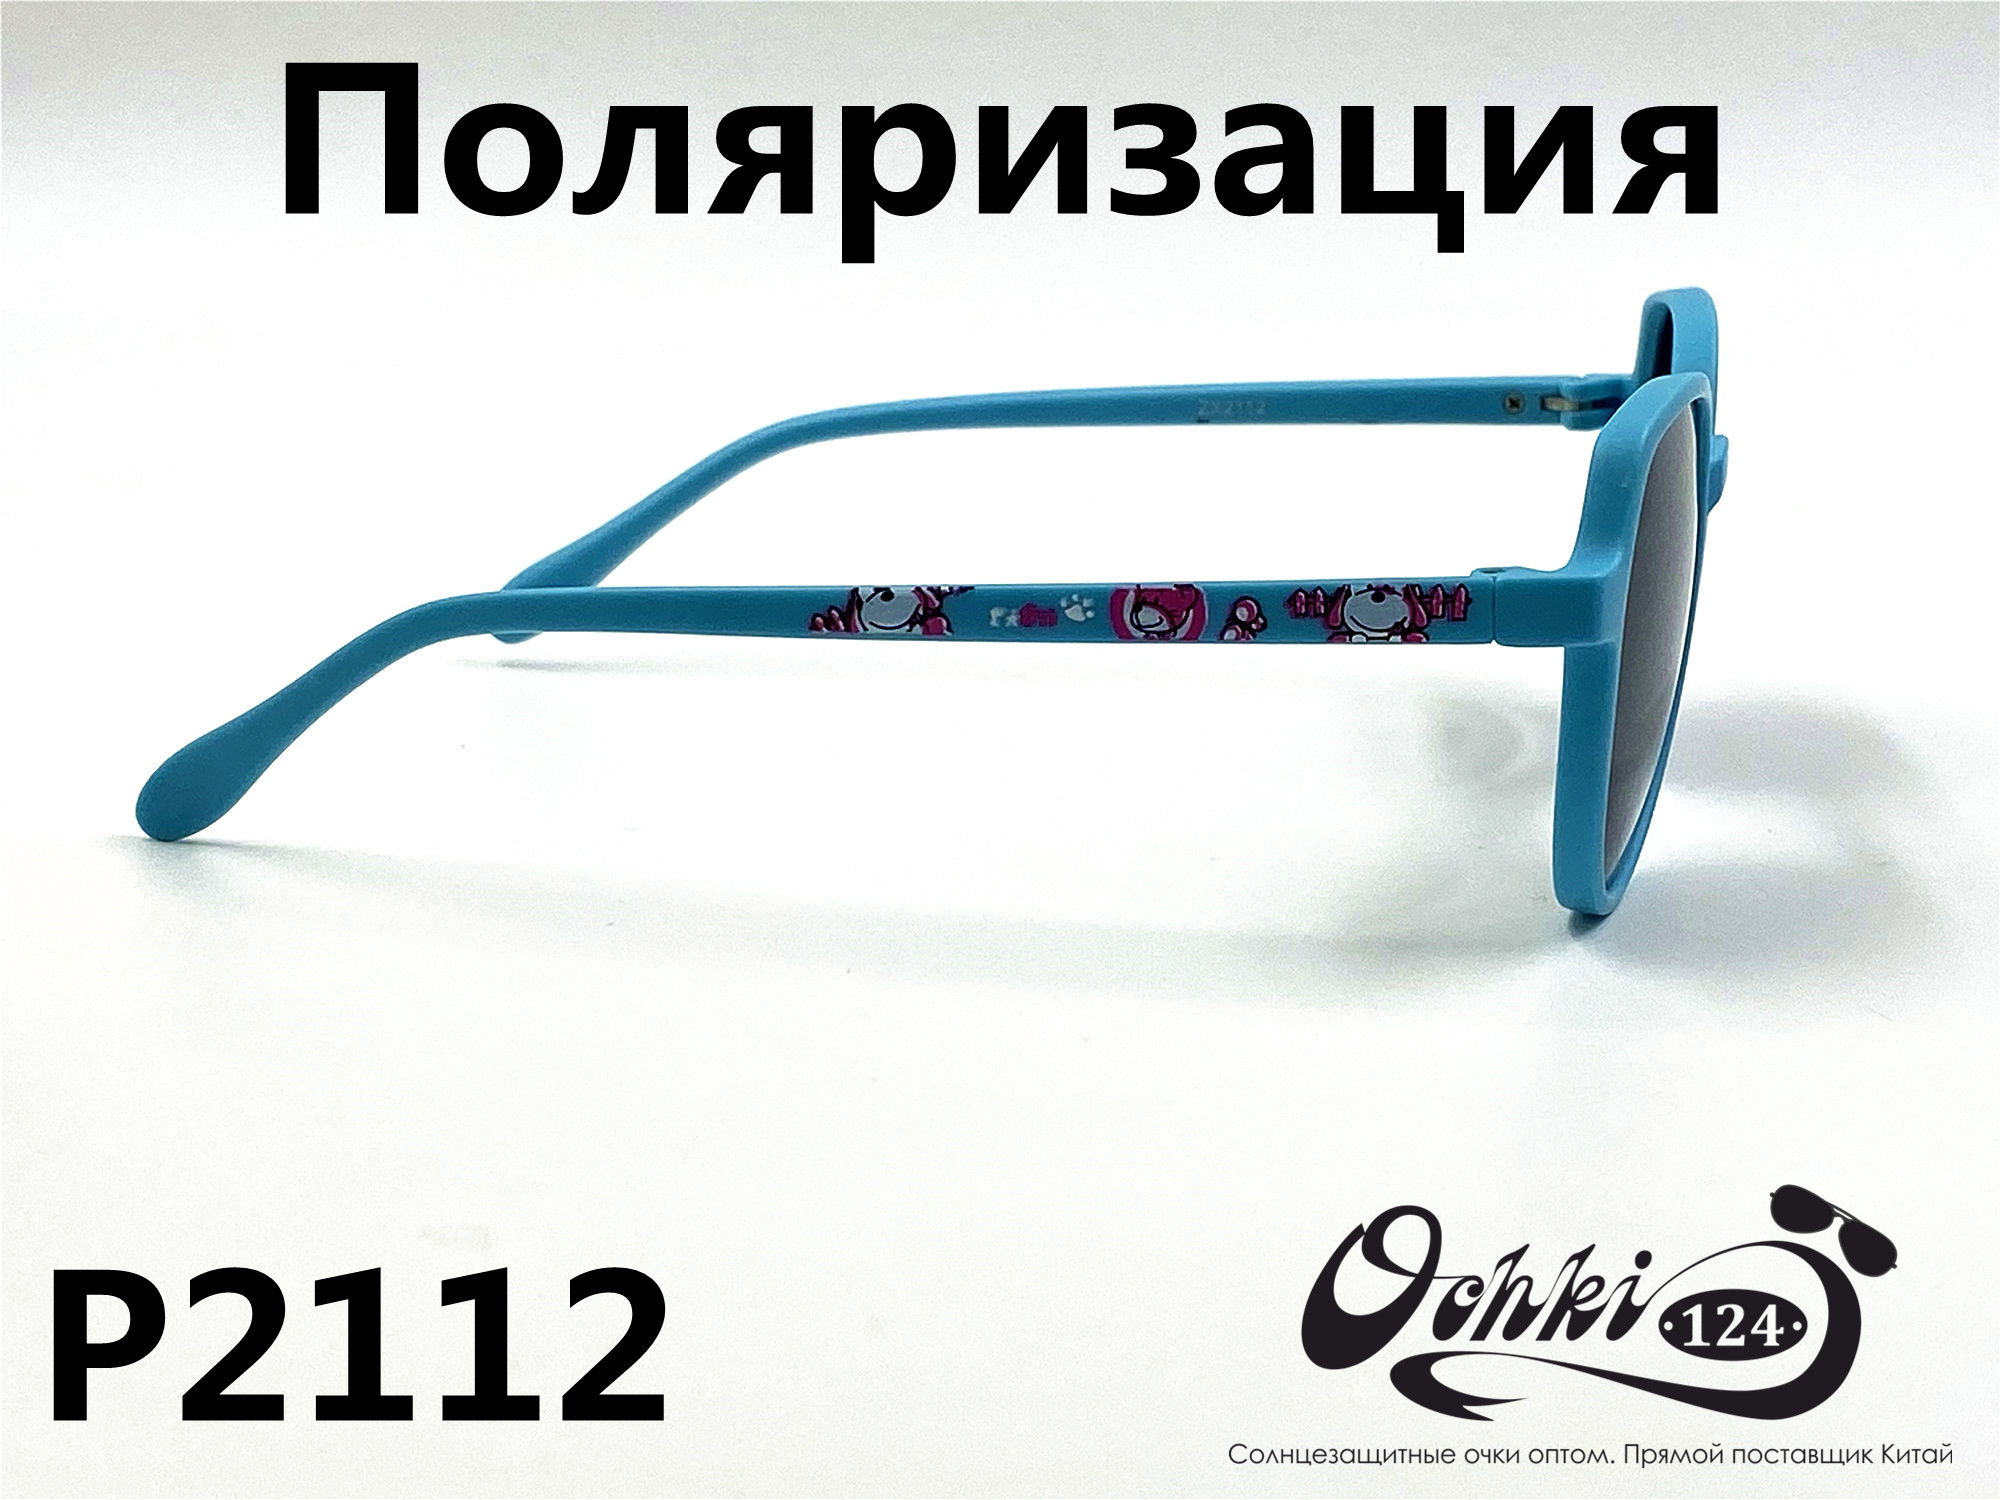  Солнцезащитные очки картинка 2022 Детские Поляризованные Круглые P2112-7 